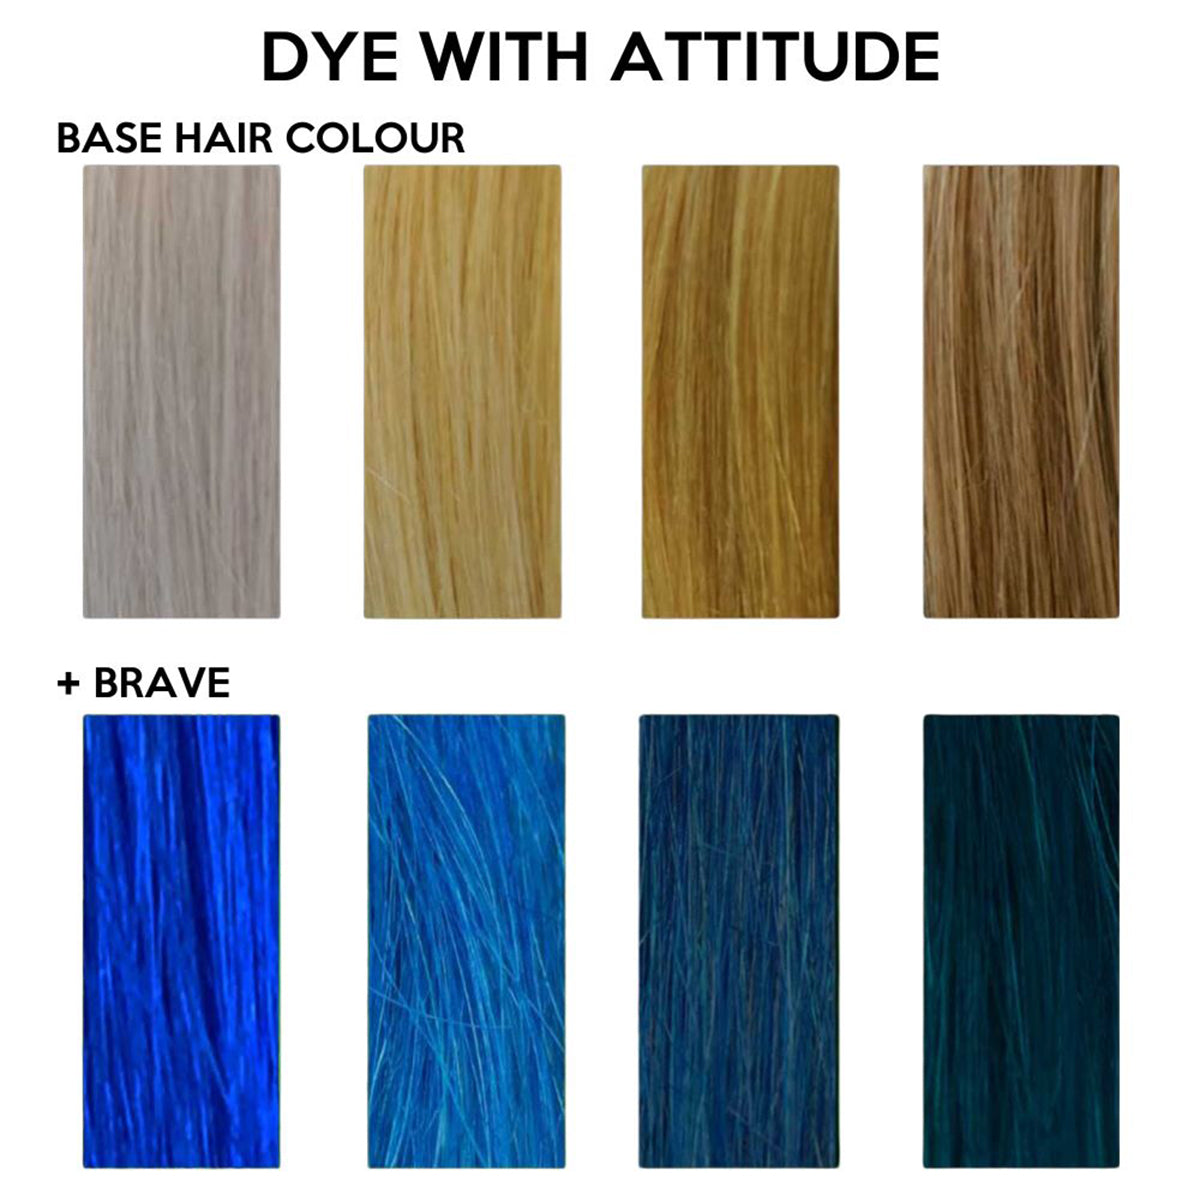 BRAVE BLUE - Attitude Hair Dye - 135ml